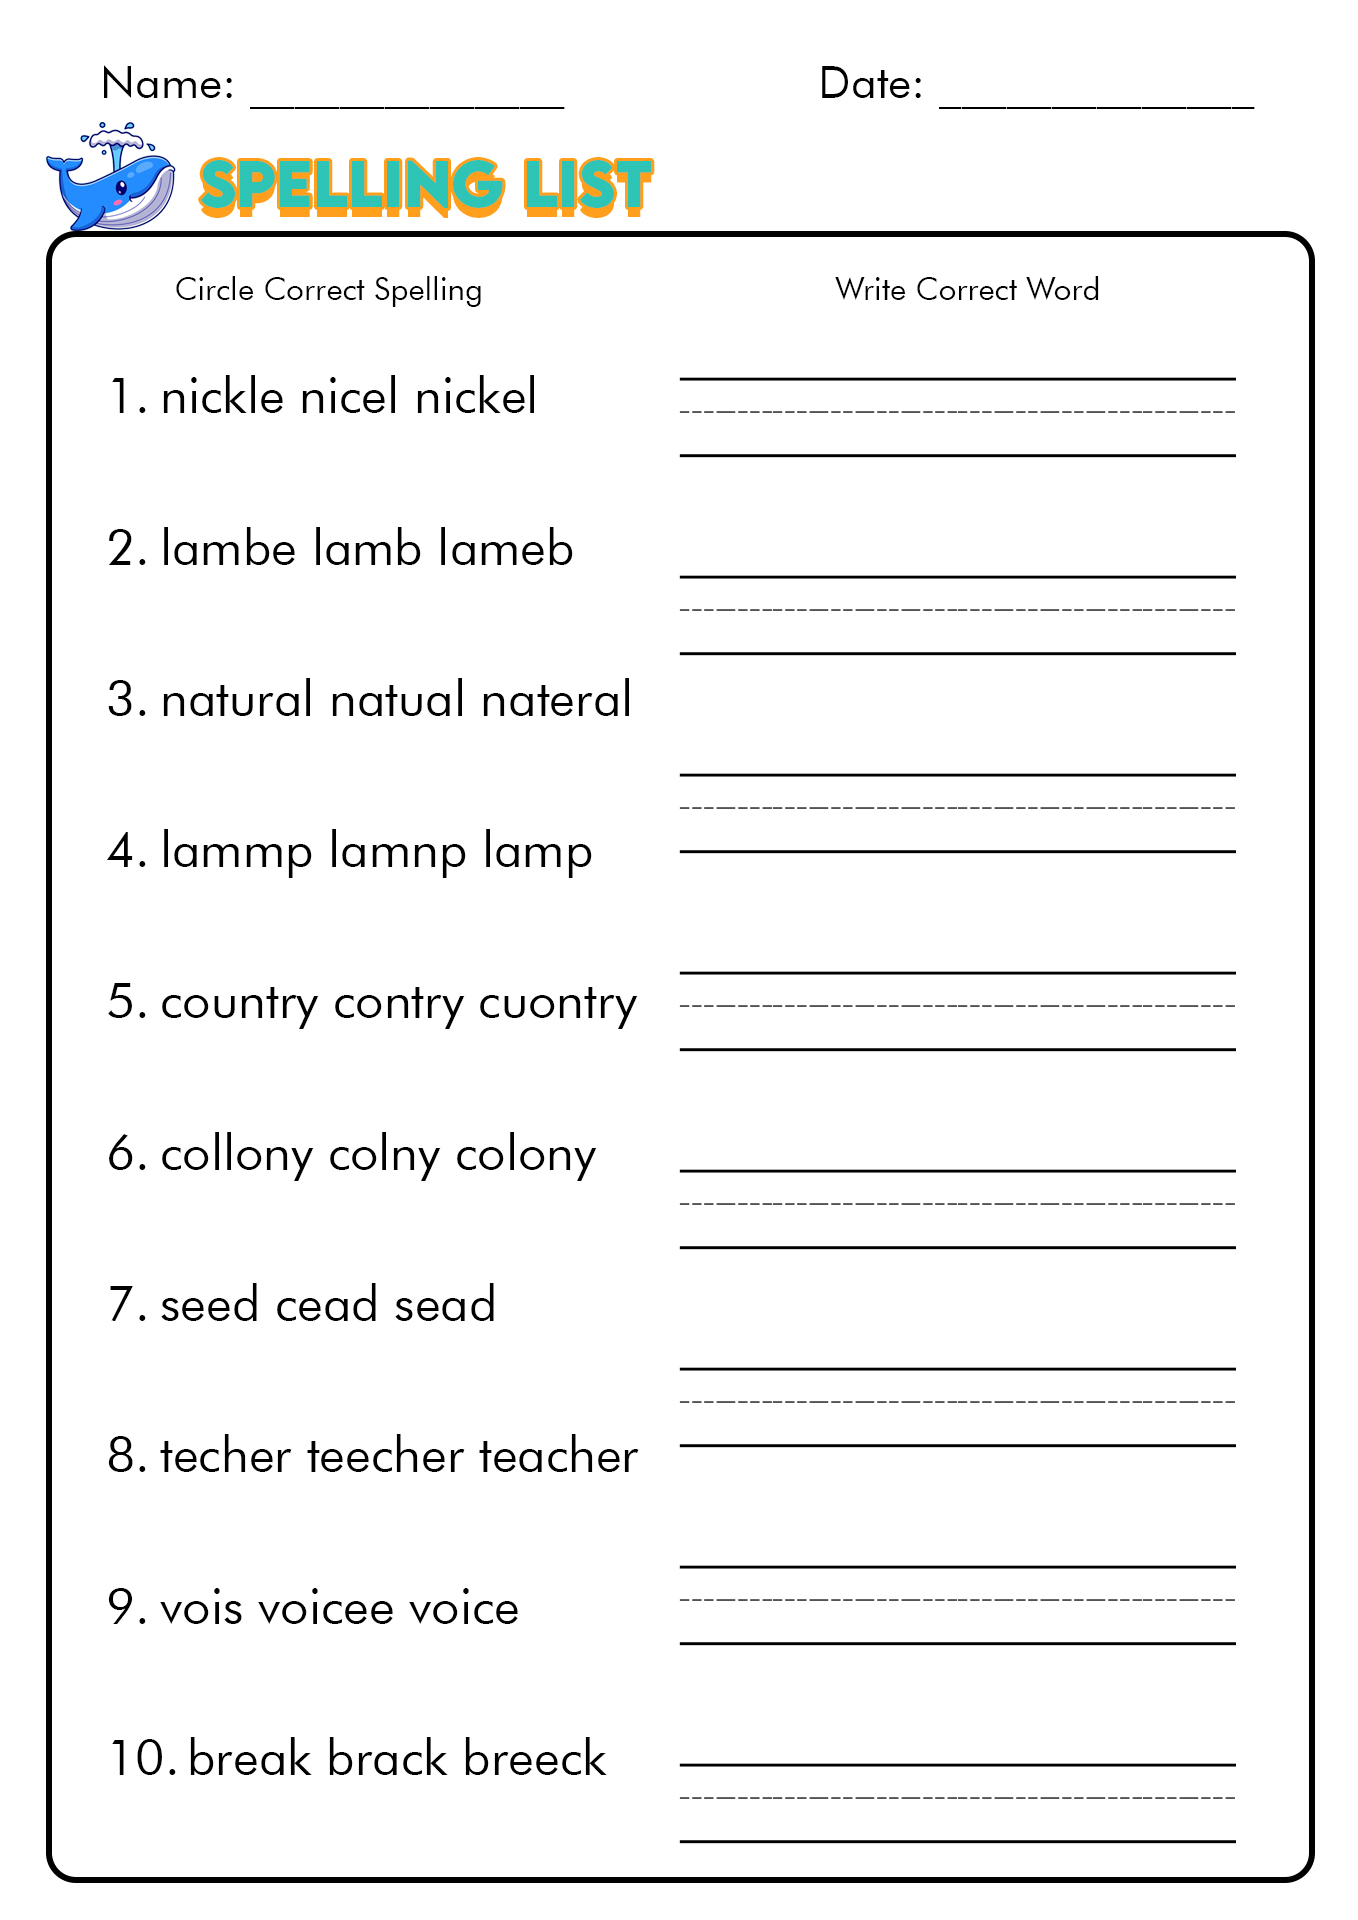 12 Free Printable Spelling Test Worksheets /